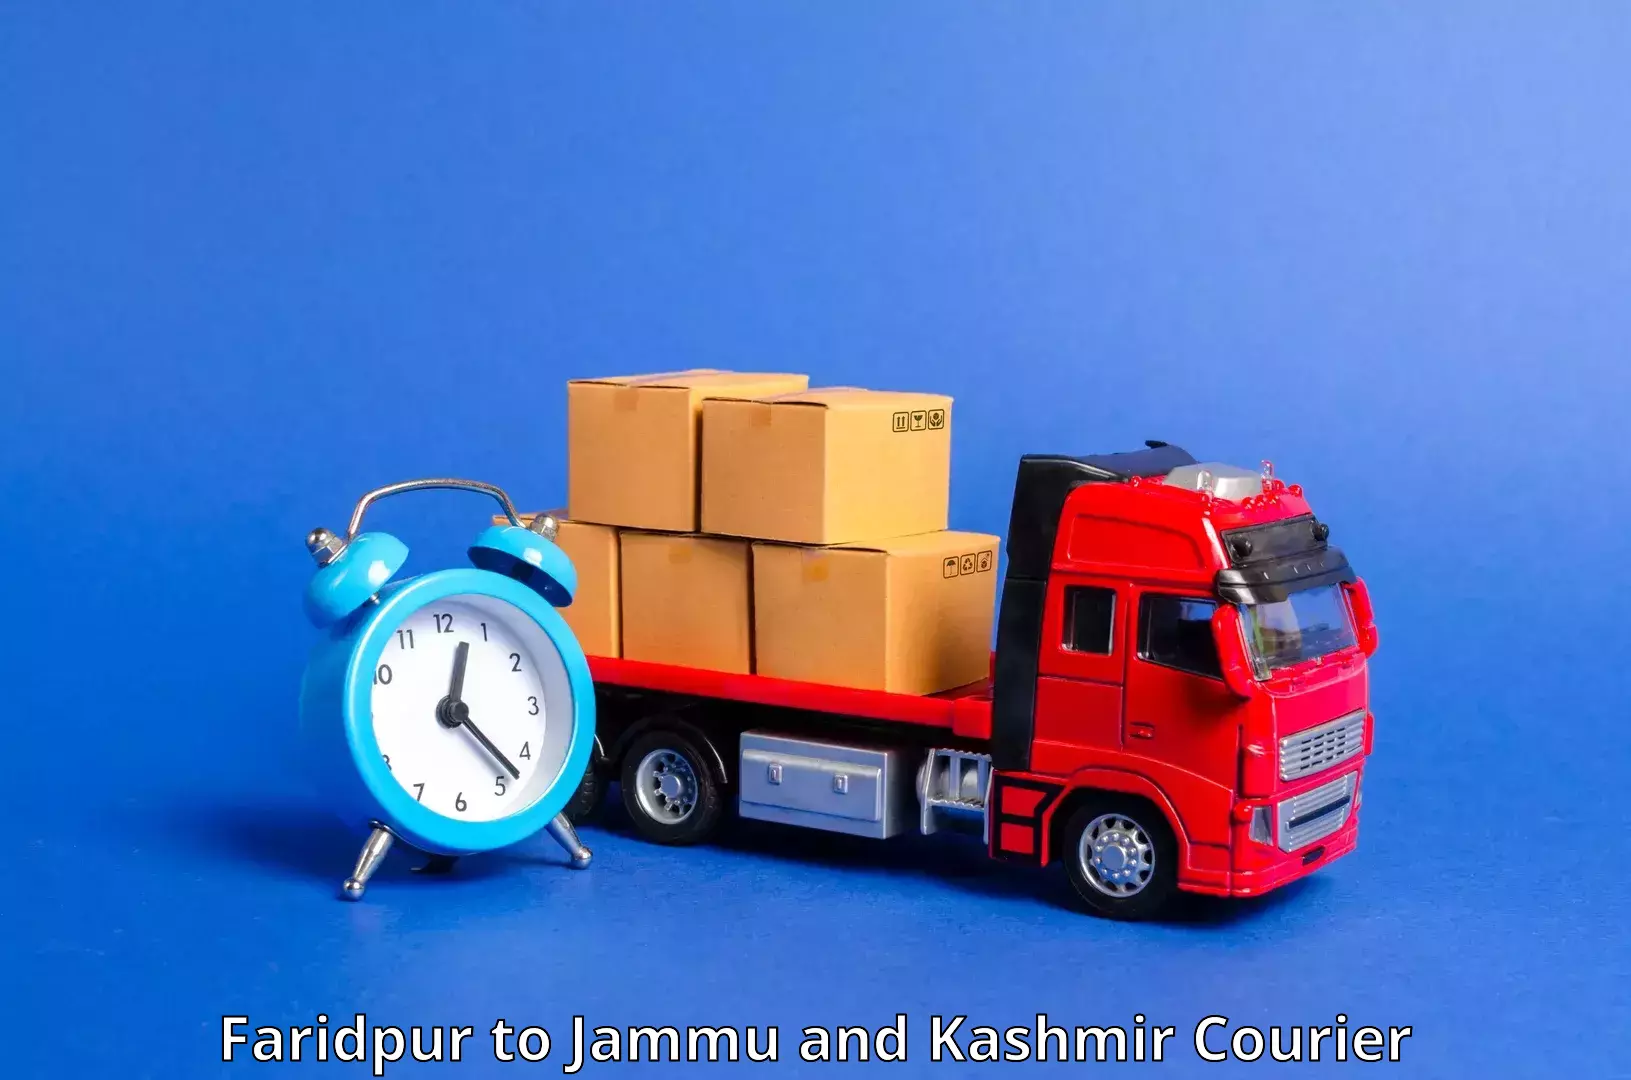 Customer-centric shipping in Faridpur to Jammu and Kashmir